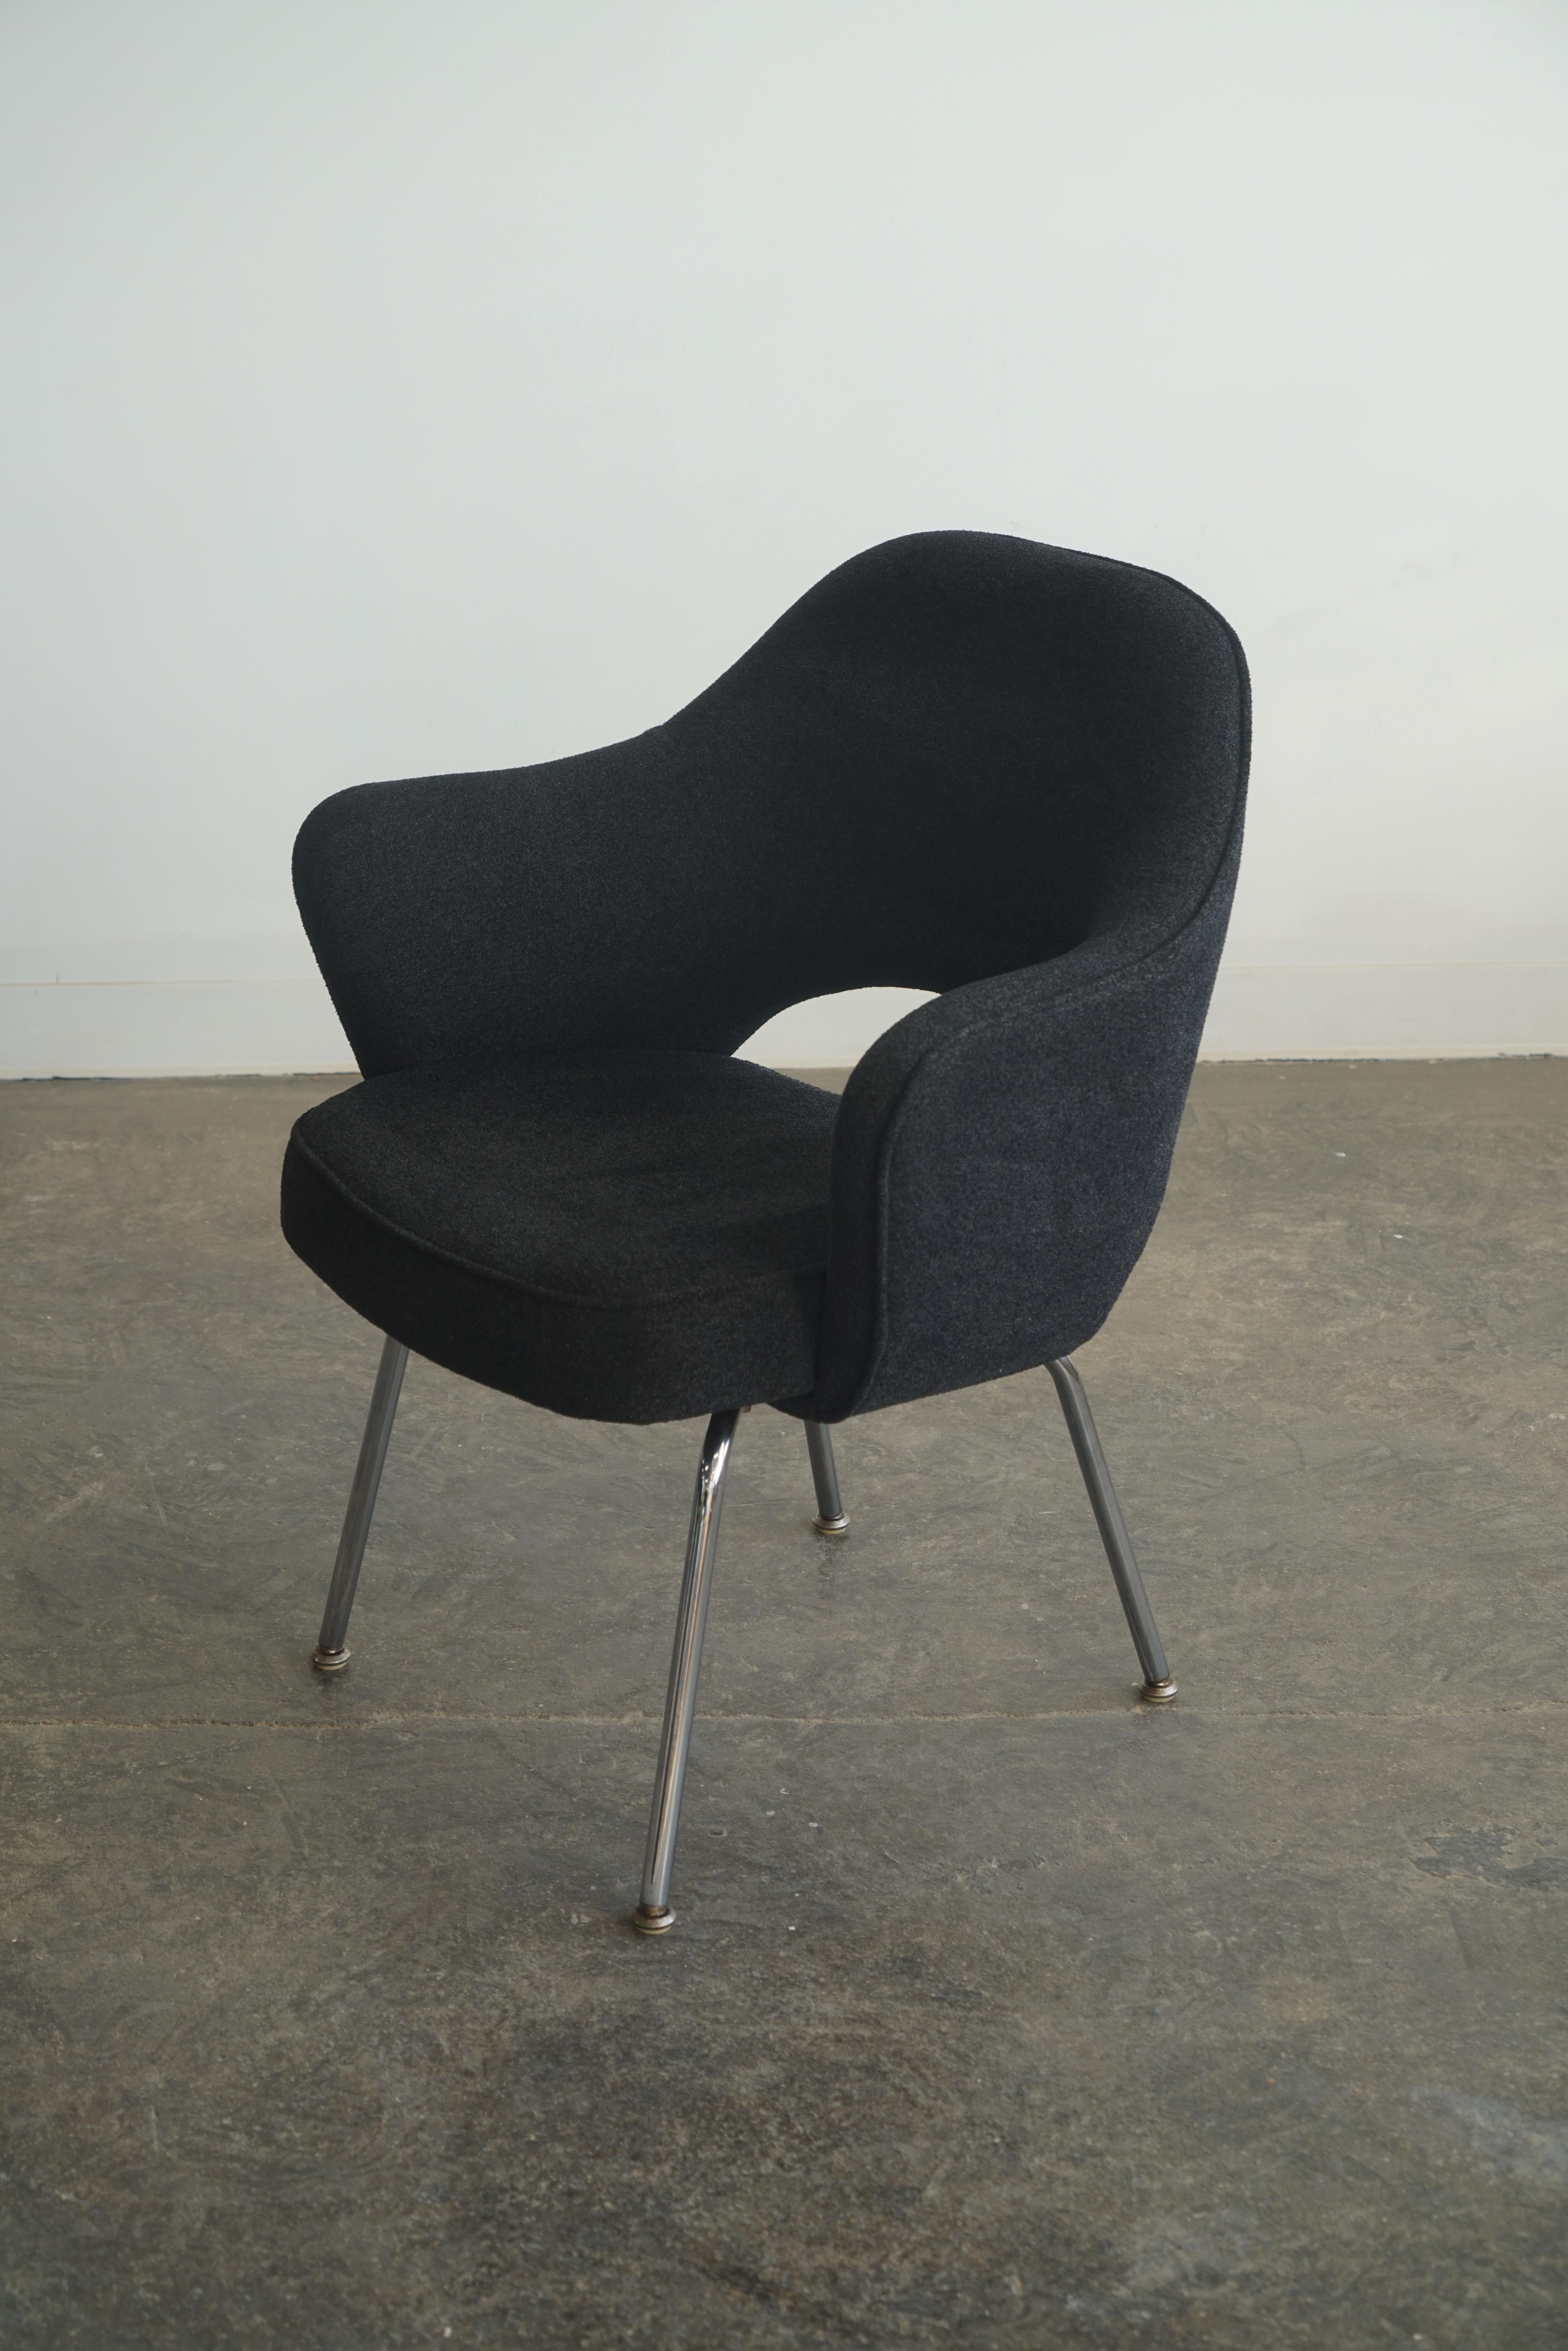 Dies für (1) Saarinen Executive Chair, Sesselversion.
Knoll, ca. 1985.
Schwarze Polsterung, verchromte Beine.

Preislich einzeln. (4) verfügbar. 

Ursprünglich 1946 entworfen, sind sie eines der beliebtesten Designs von Knoll.

Bedingung:
Insgesamt